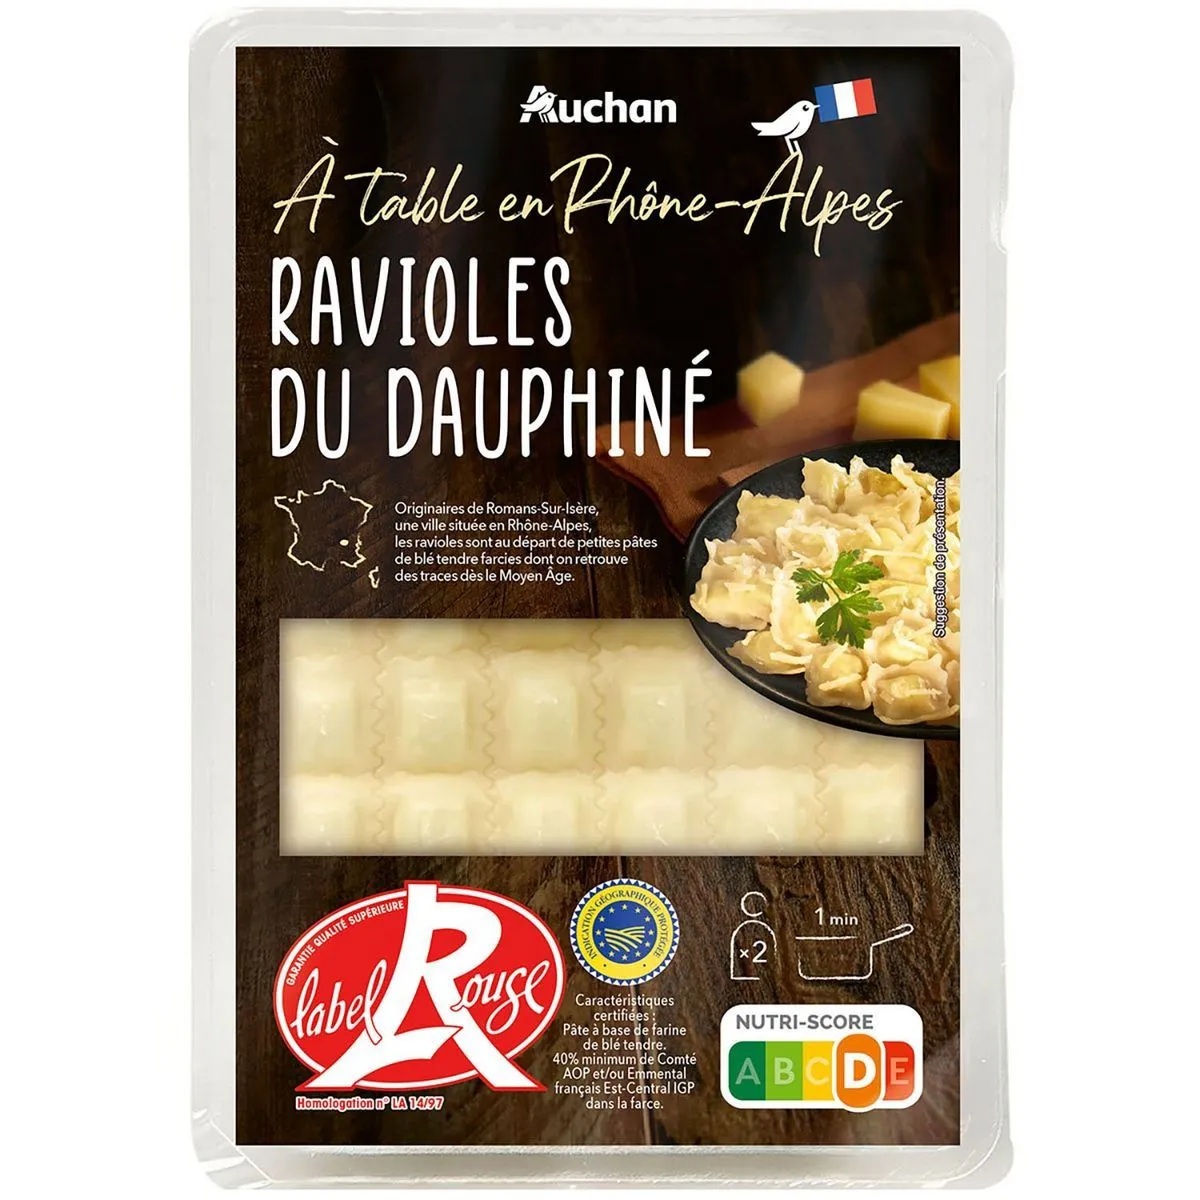  ravioles du dauphiné label rouge auchan a table en france